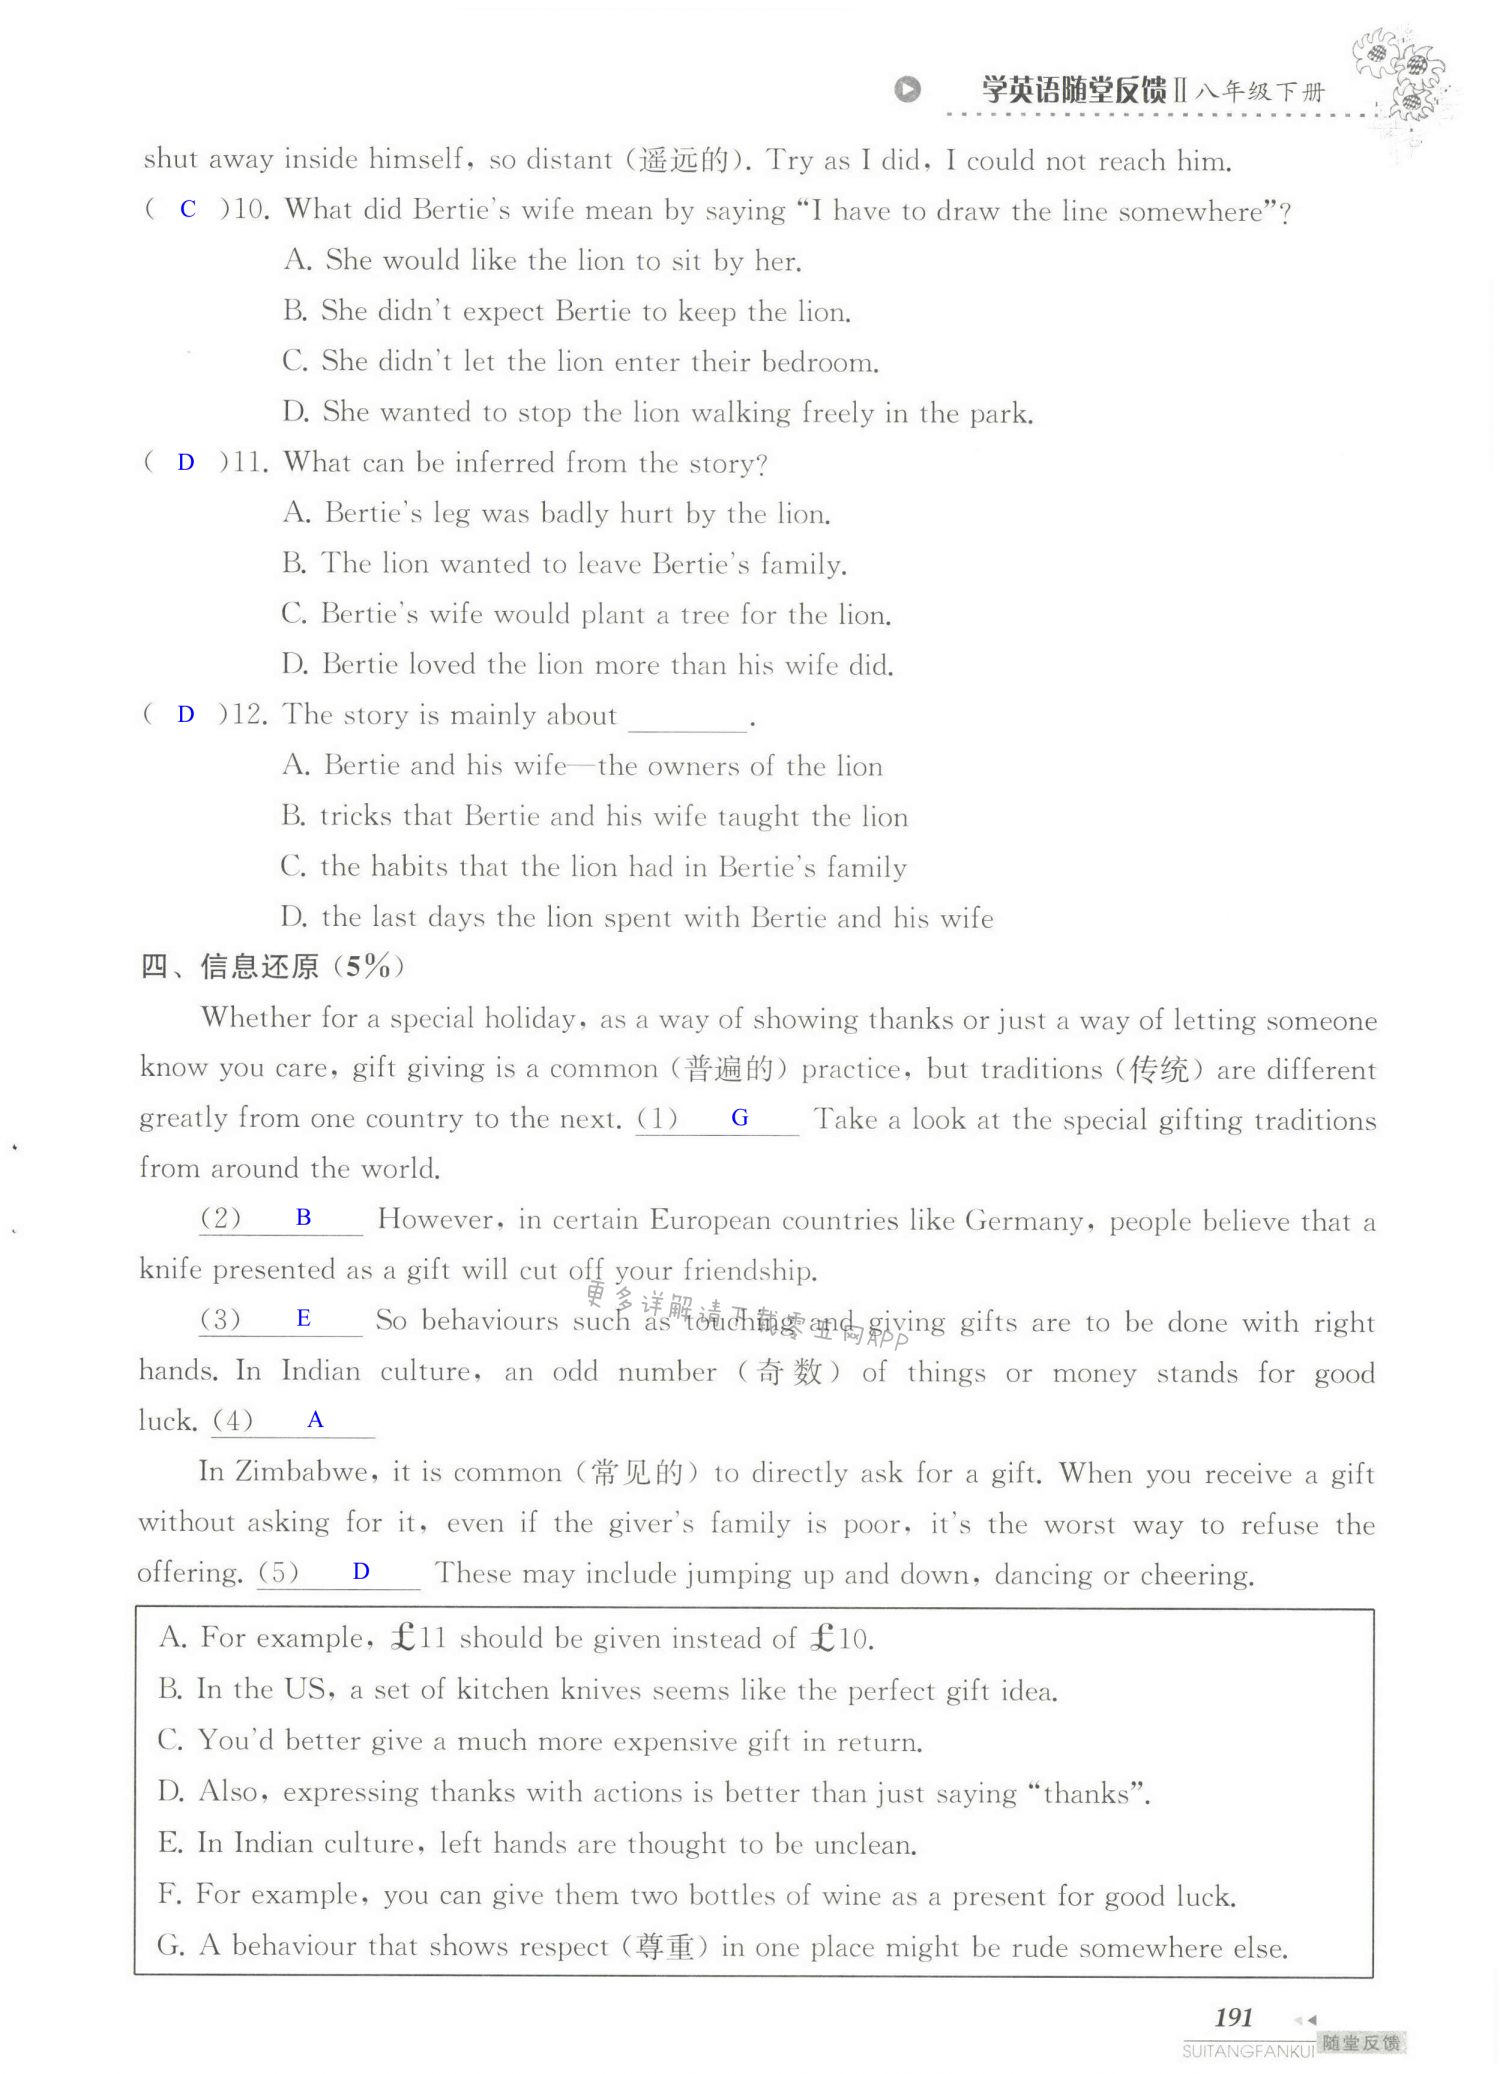 单元综合测试卷 Test for Unit 5 of 8B - 第191页